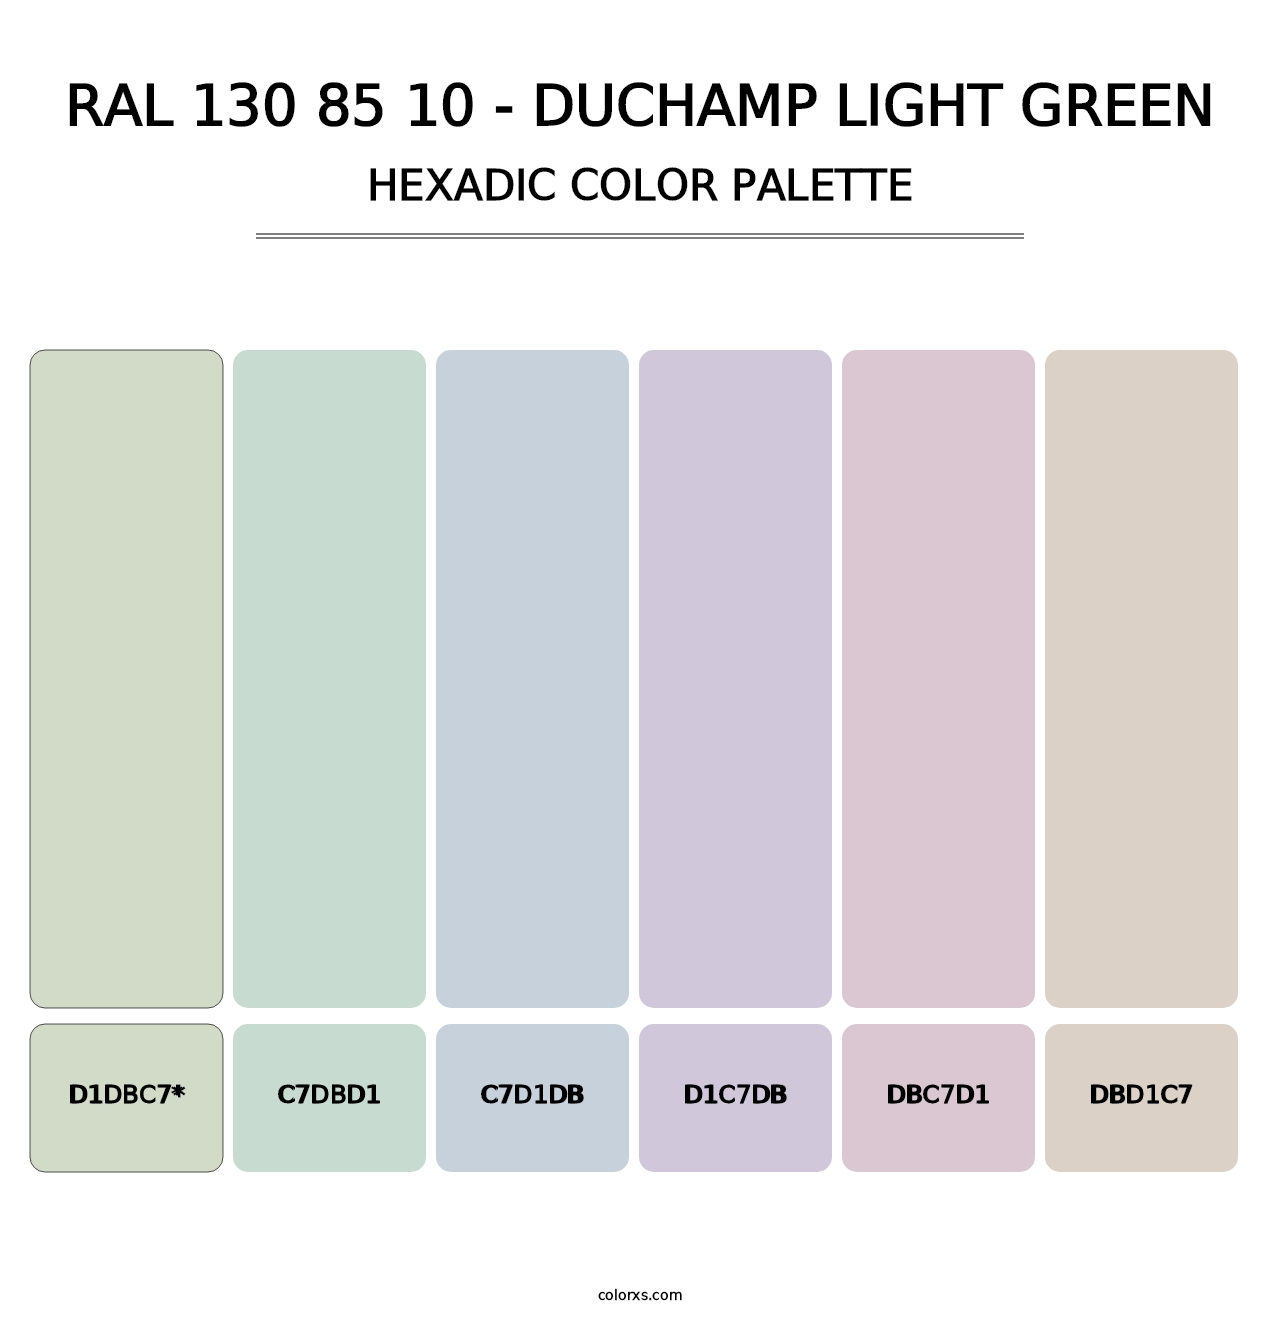 RAL 130 85 10 - Duchamp Light Green - Hexadic Color Palette